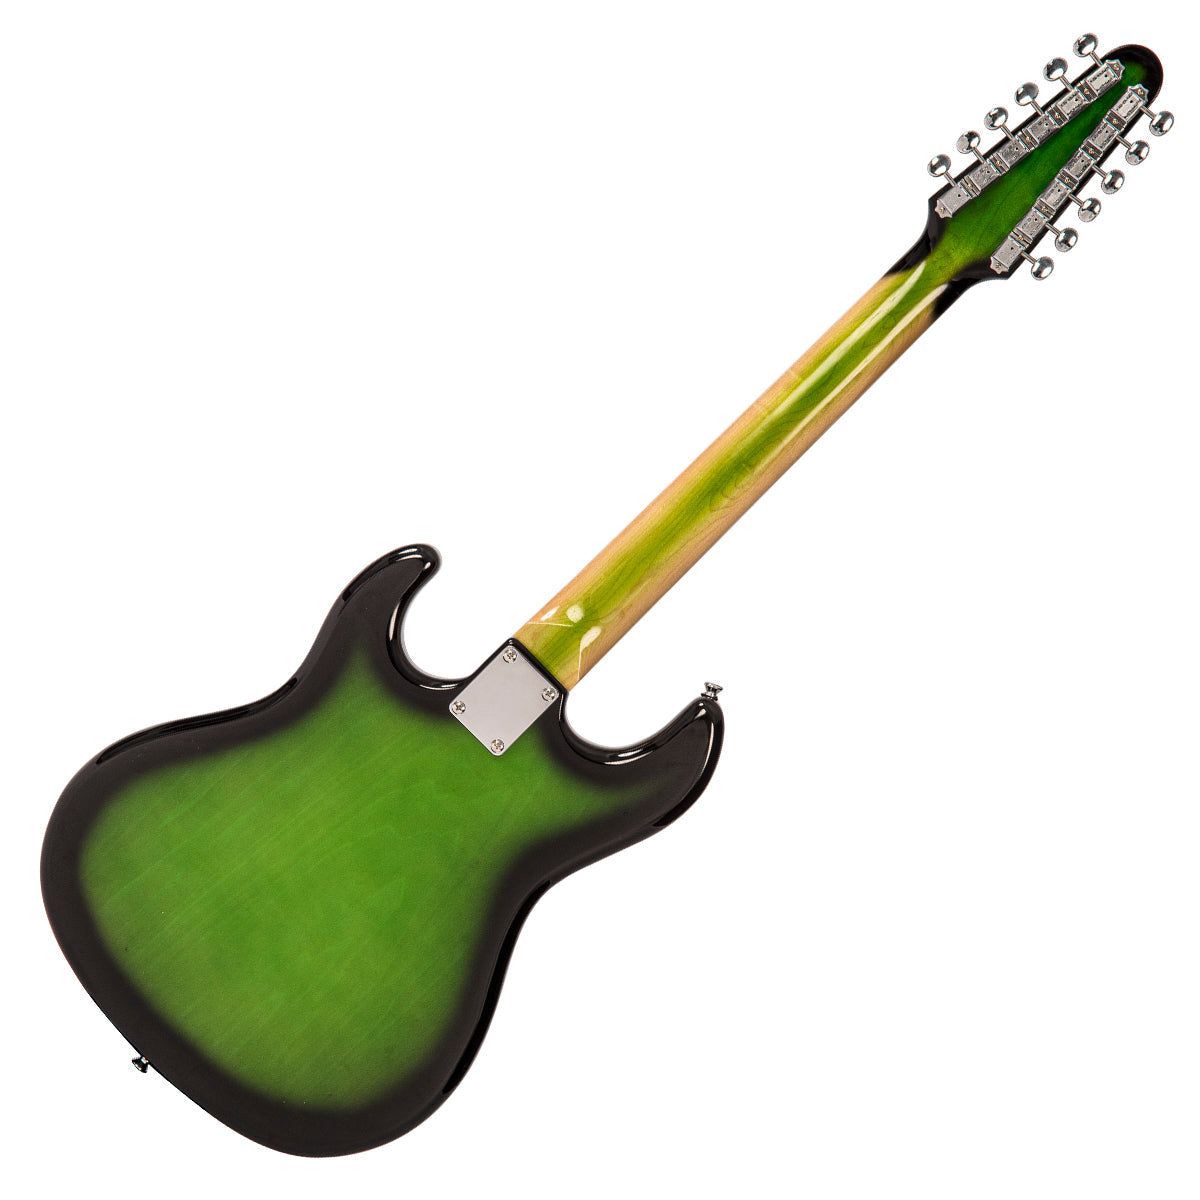 Rapier Saffire 12 String Electric Guitar ~ Greenburst, Electric Guitar for sale at Richards Guitars.